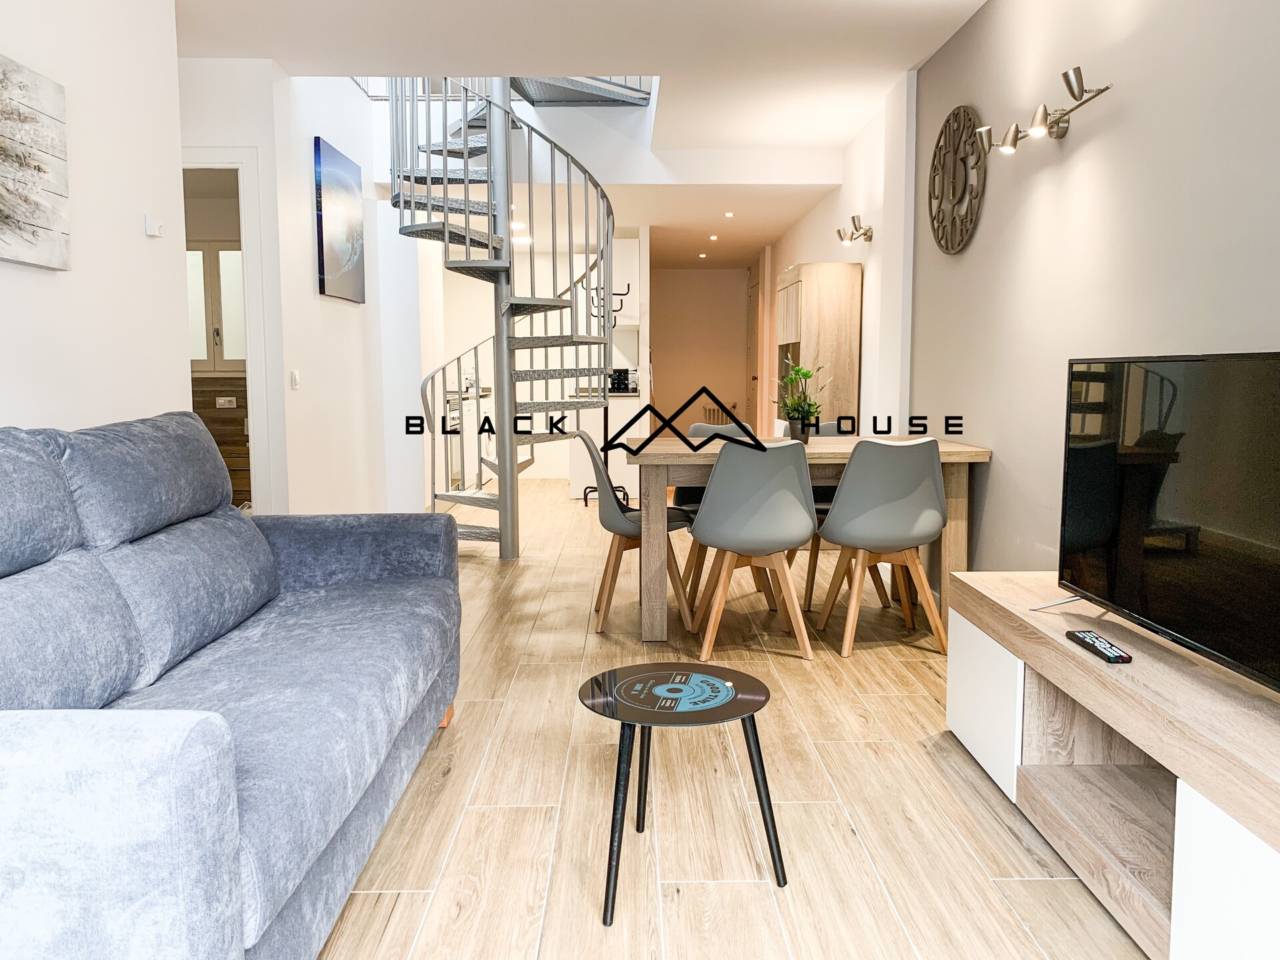 Lote de 4 apartamentos reformados, amueblados y equipados a la venta en el centro de Andorra la Vella. IDEAL INVERSORES